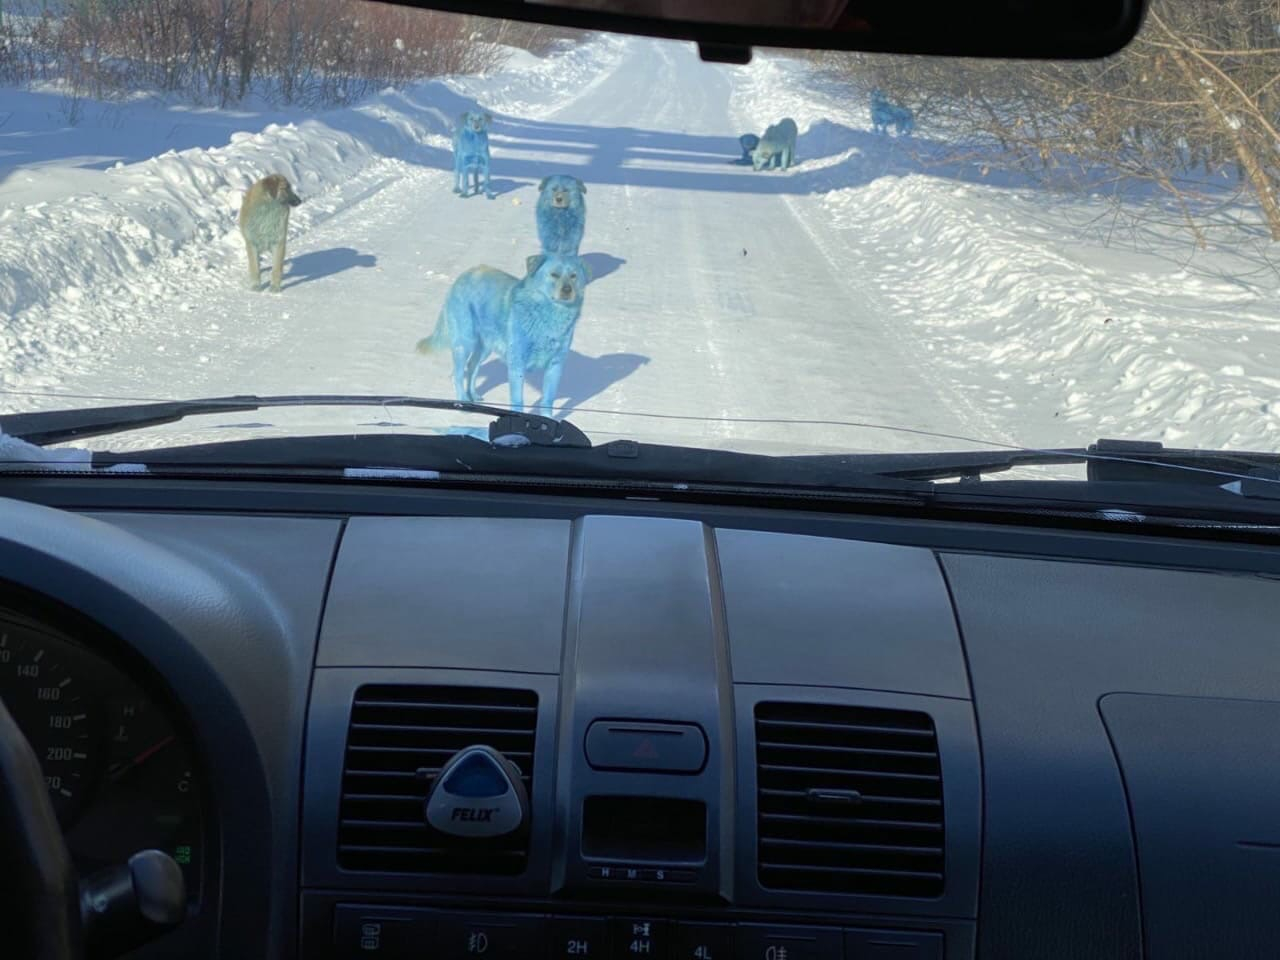 Свору собак синего цвета заметили в Нижегородской области